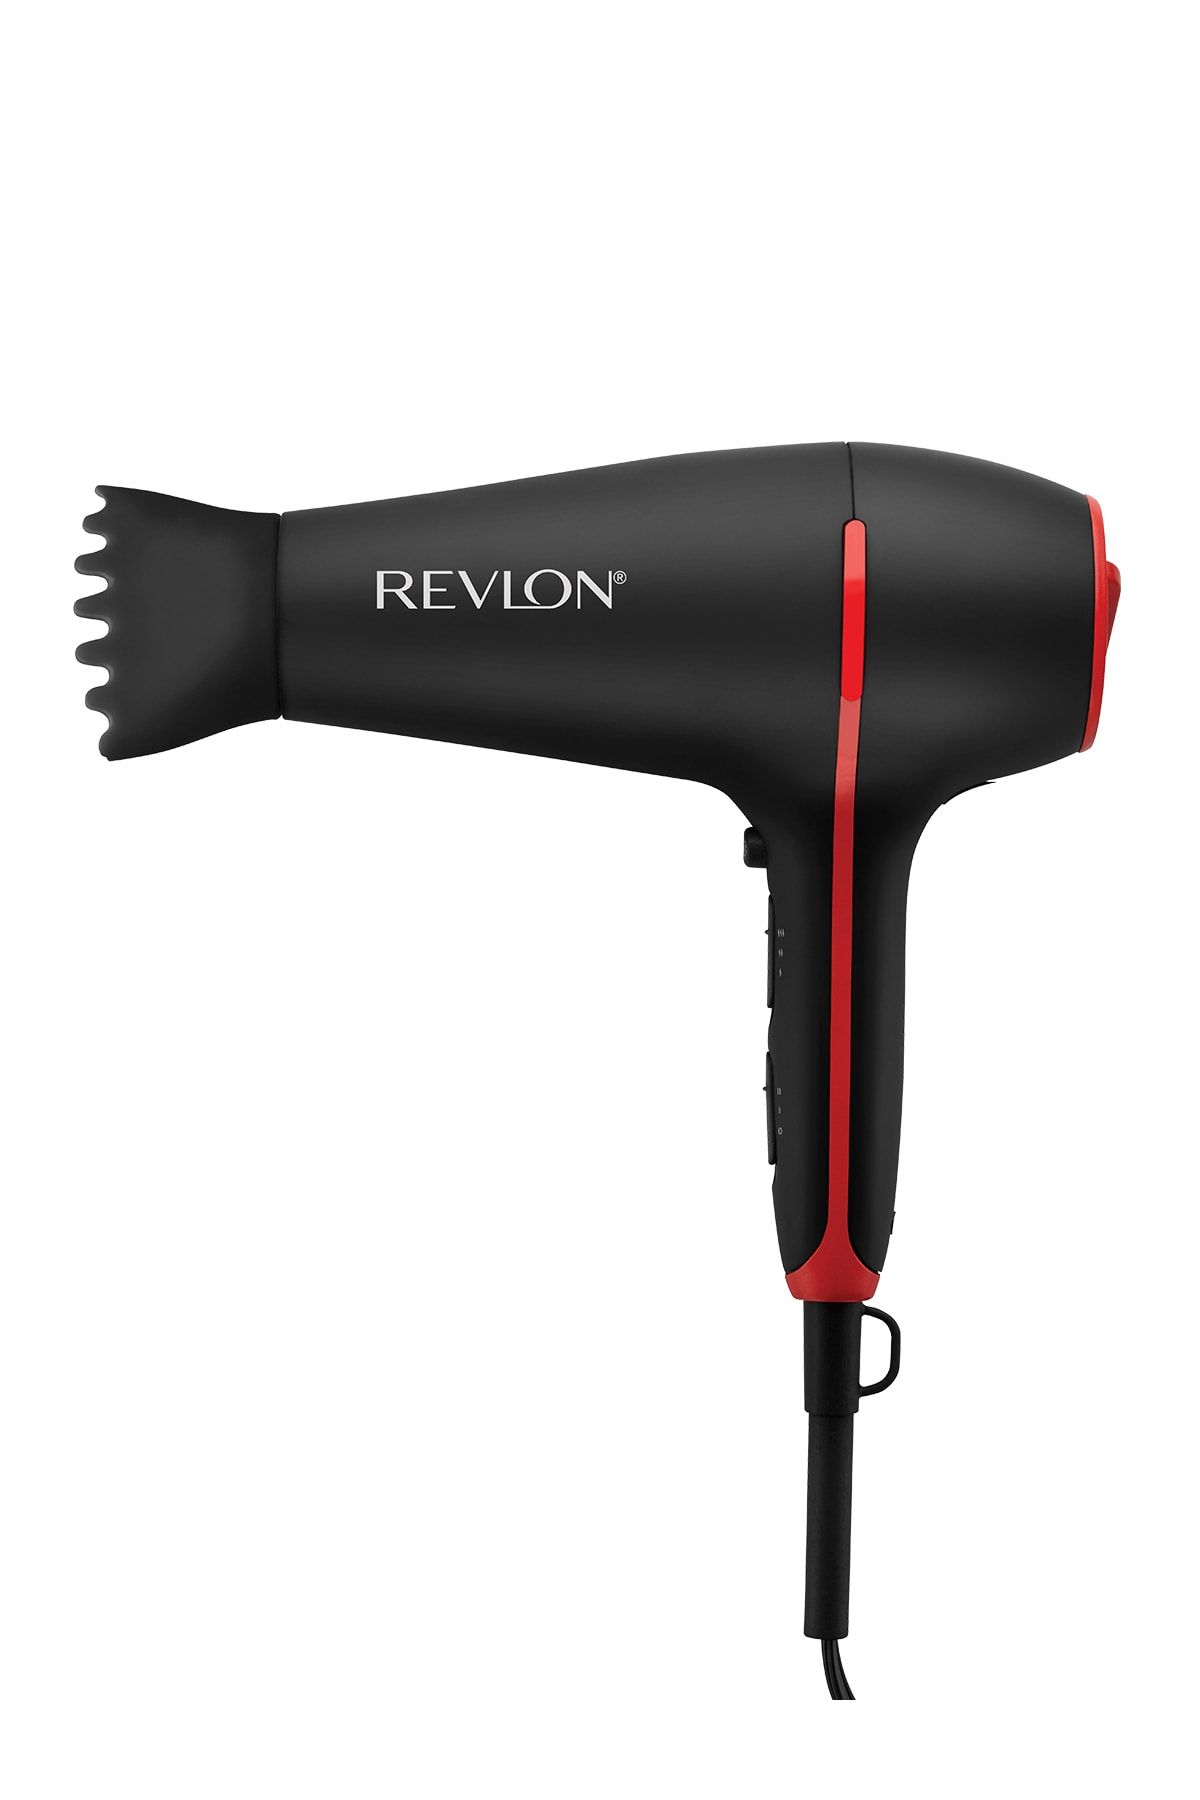 Revlon Smoothstay Hindistan Cevizi Yağlı Saç Kurutma Makinesi RVDR5317E